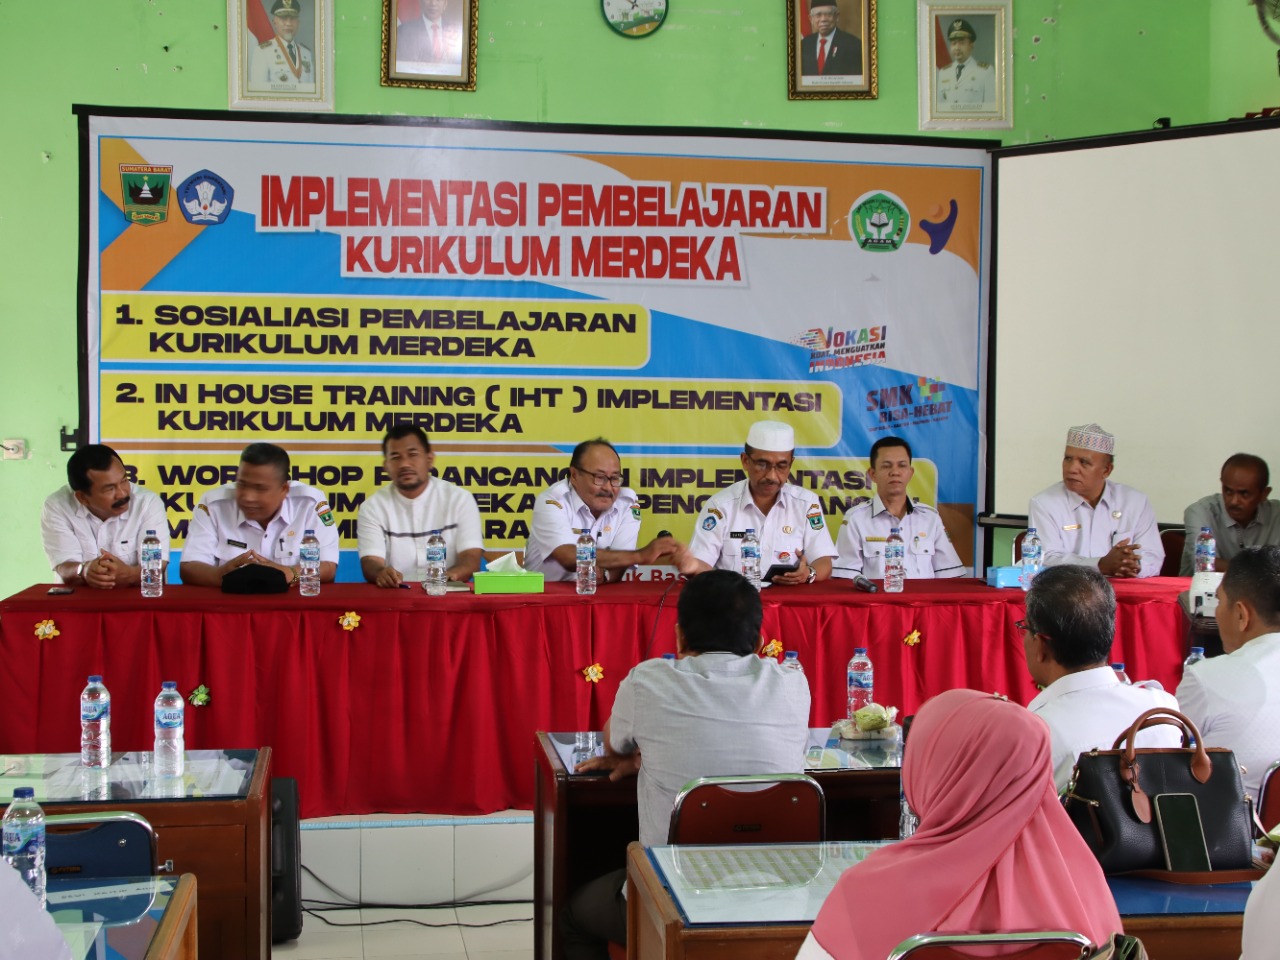 Implementasi Pembelajaran Kurikulum Merdeka Oleh Bapak Kepala Dinas Provinsi Sumatera Barat